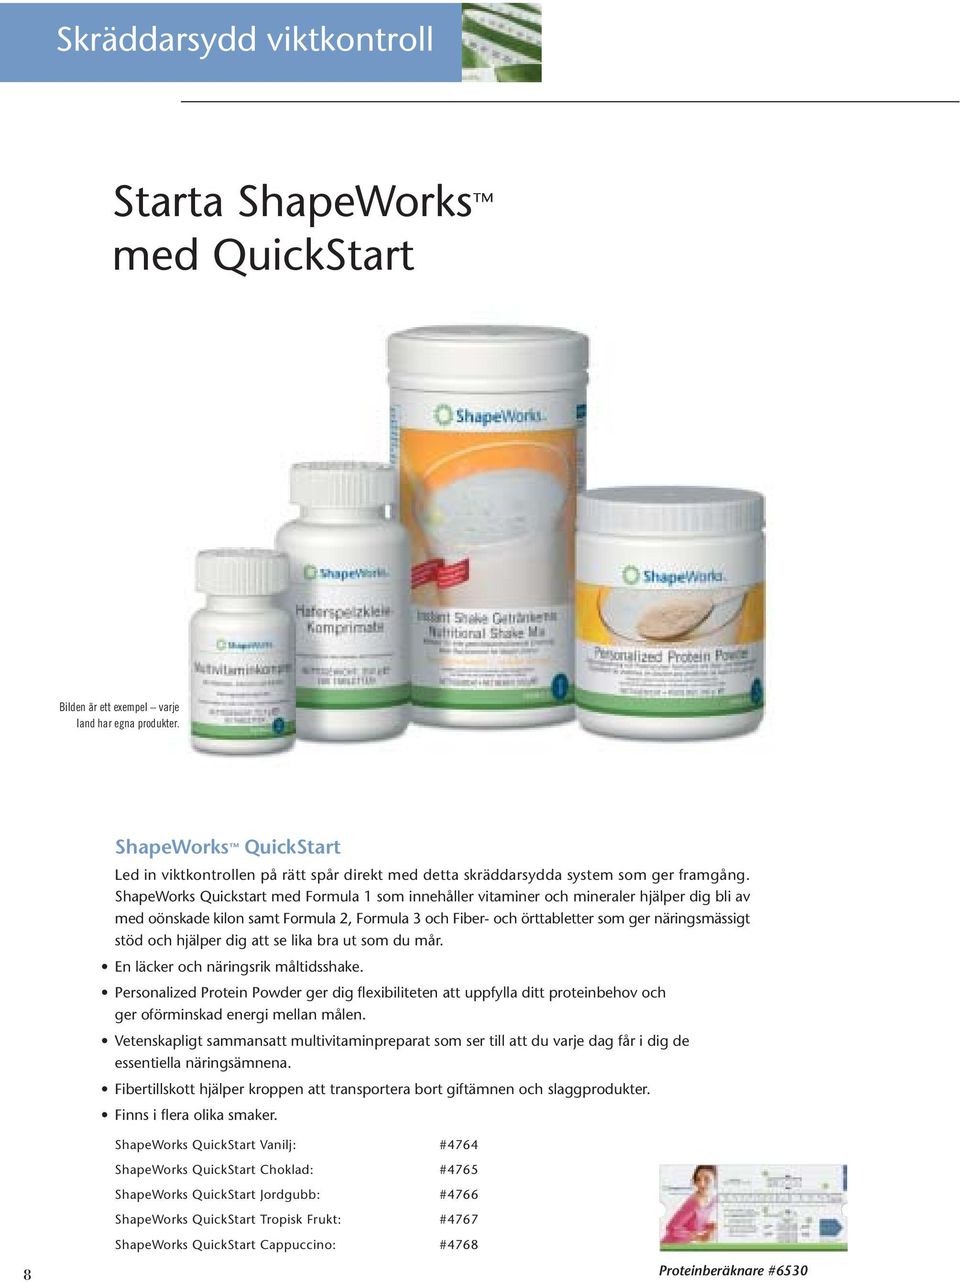 ShapeWorks Quickstart med Formula 1 som innehåller vitaminer och mineraler hjälper dig bli av med oönskade kilon samt Formula 2, Formula 3 och Fiber- och örttabletter som ger näringsmässigt stöd och